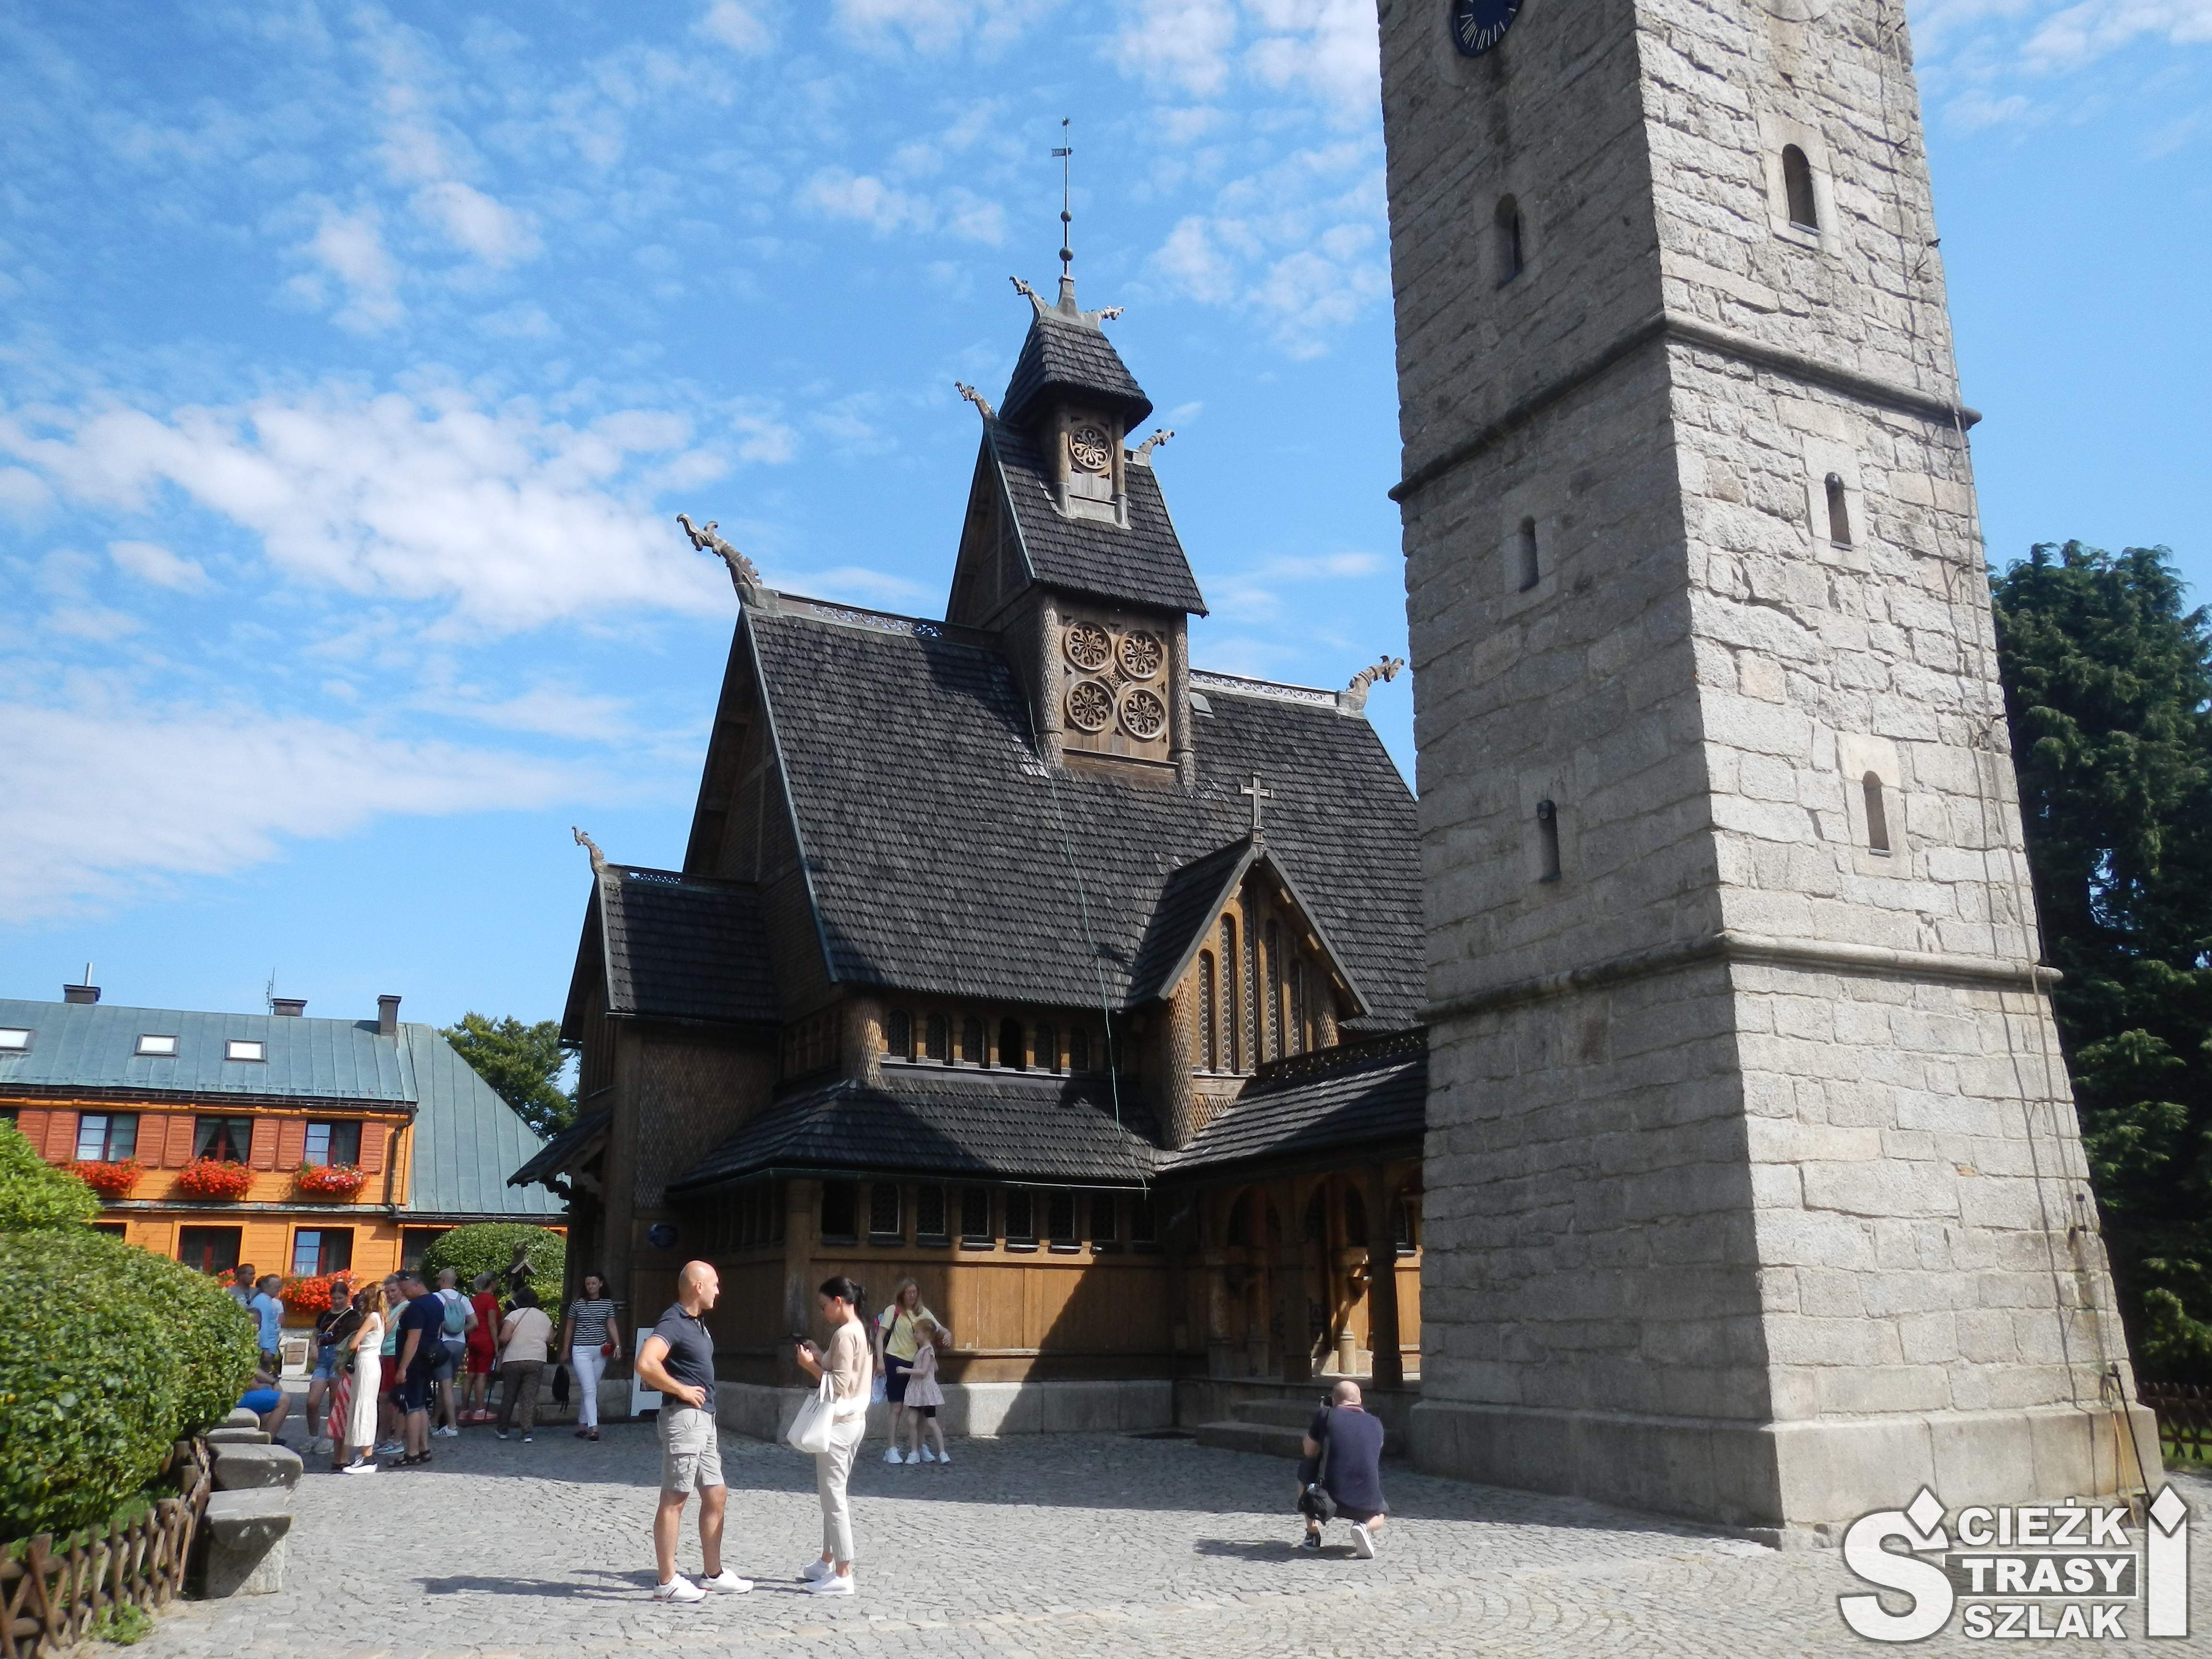 Zabytkowy kościół drewniany osłonięty przed górskim klimatem przez wysoką dzwonnicę podziwiany przez dorosłych